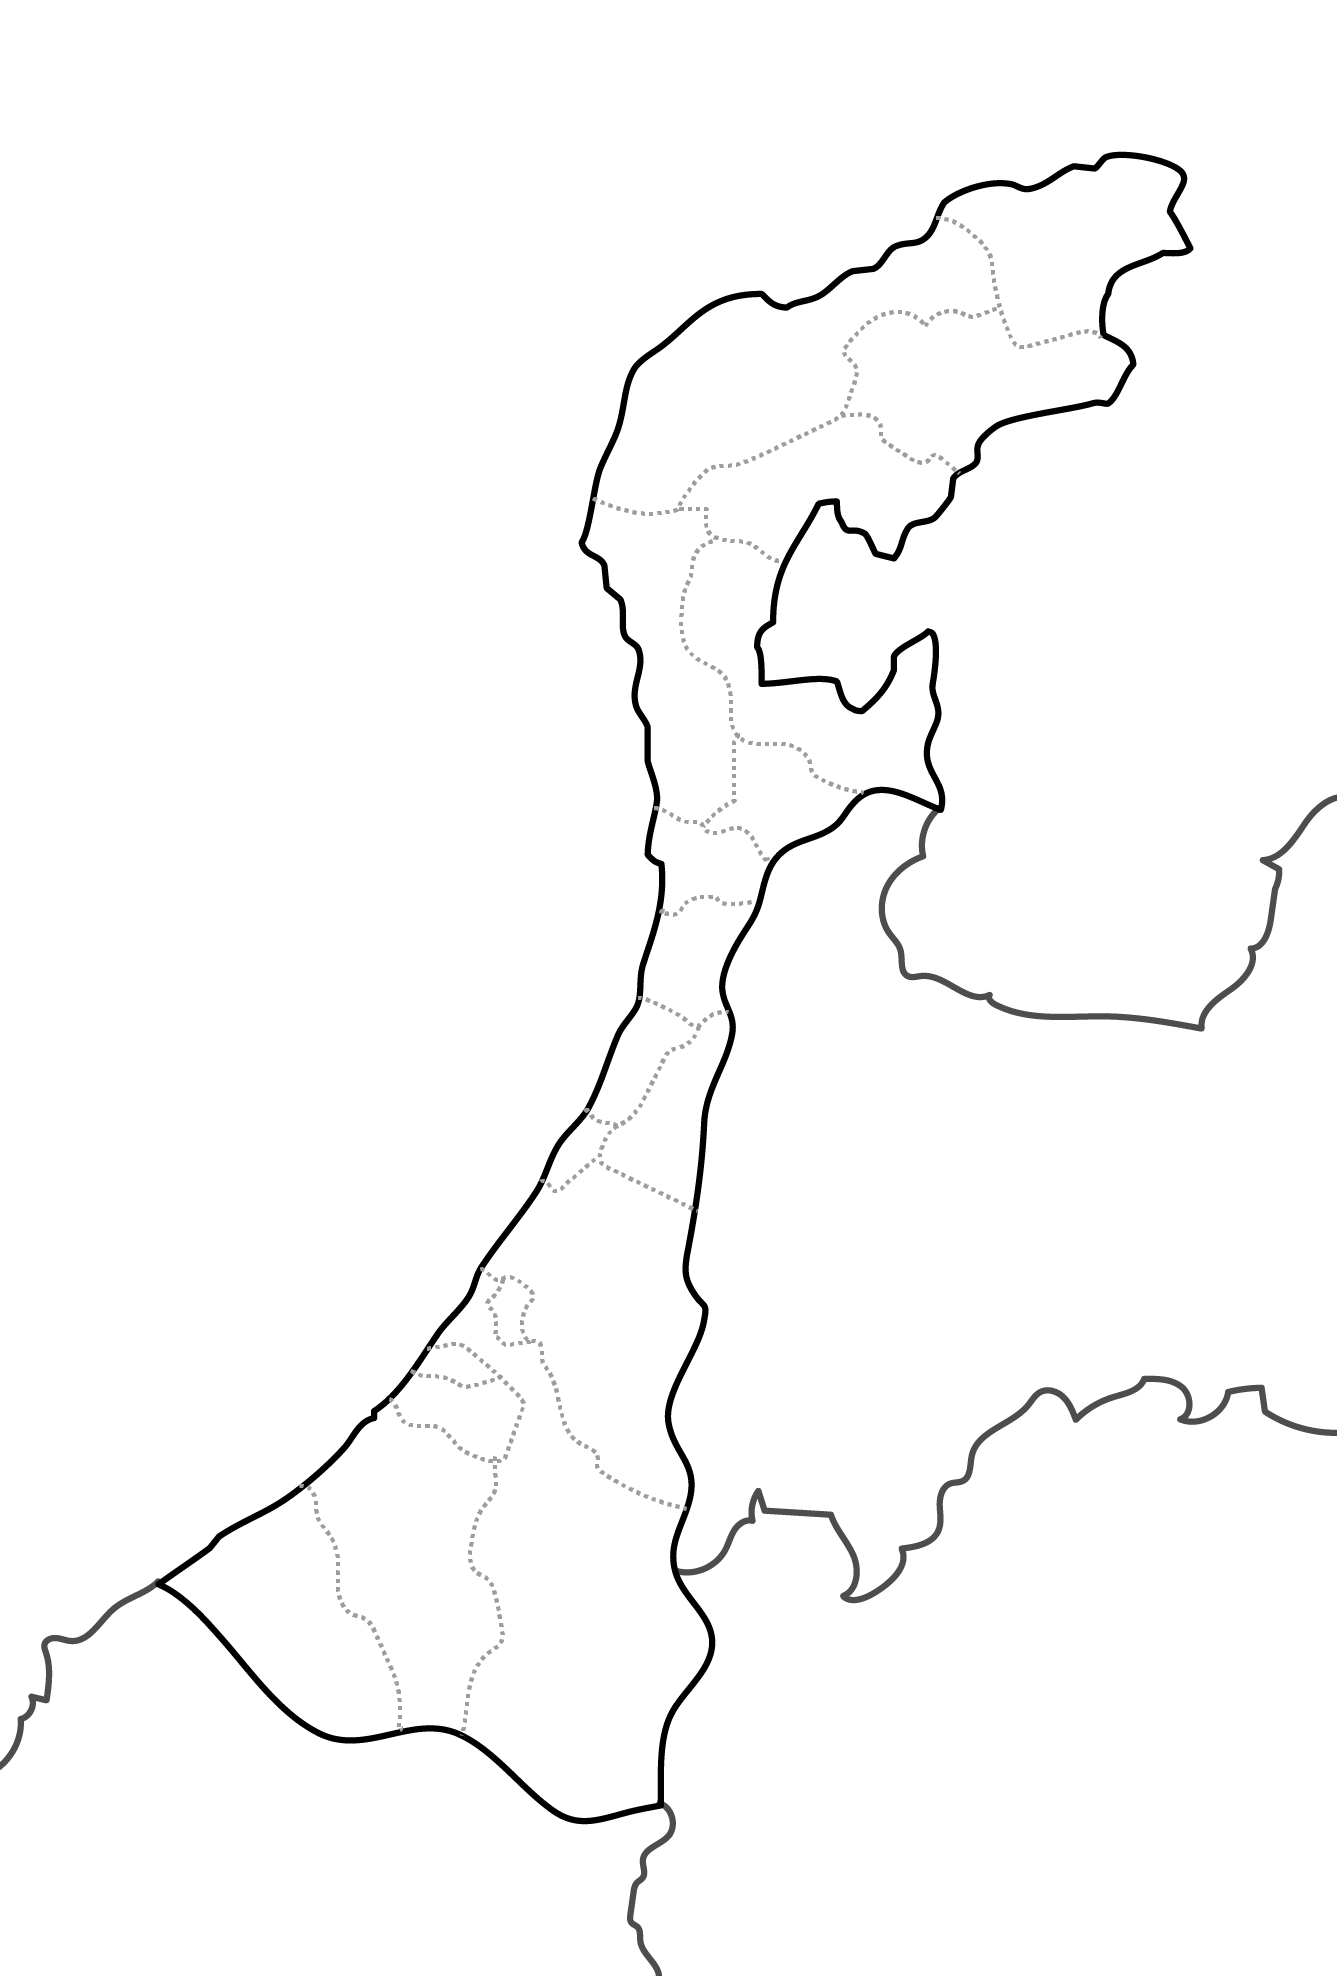 [白地図]石川県・ラインあり・市区町村名なし・隣県なし